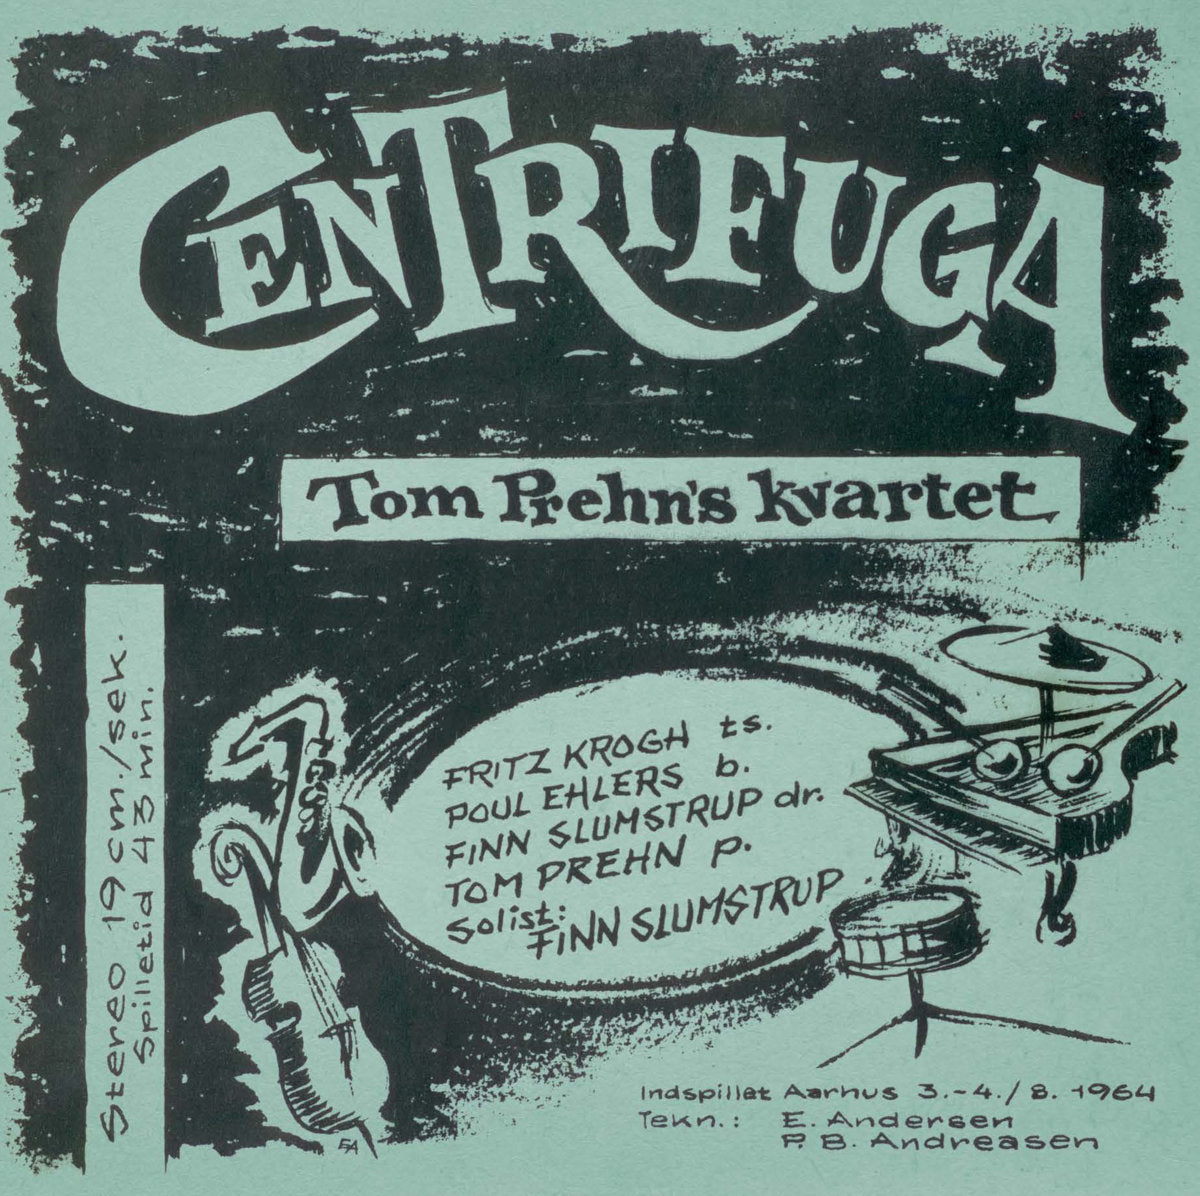 Tom Prehn's Kvartet - Centrifuga LP